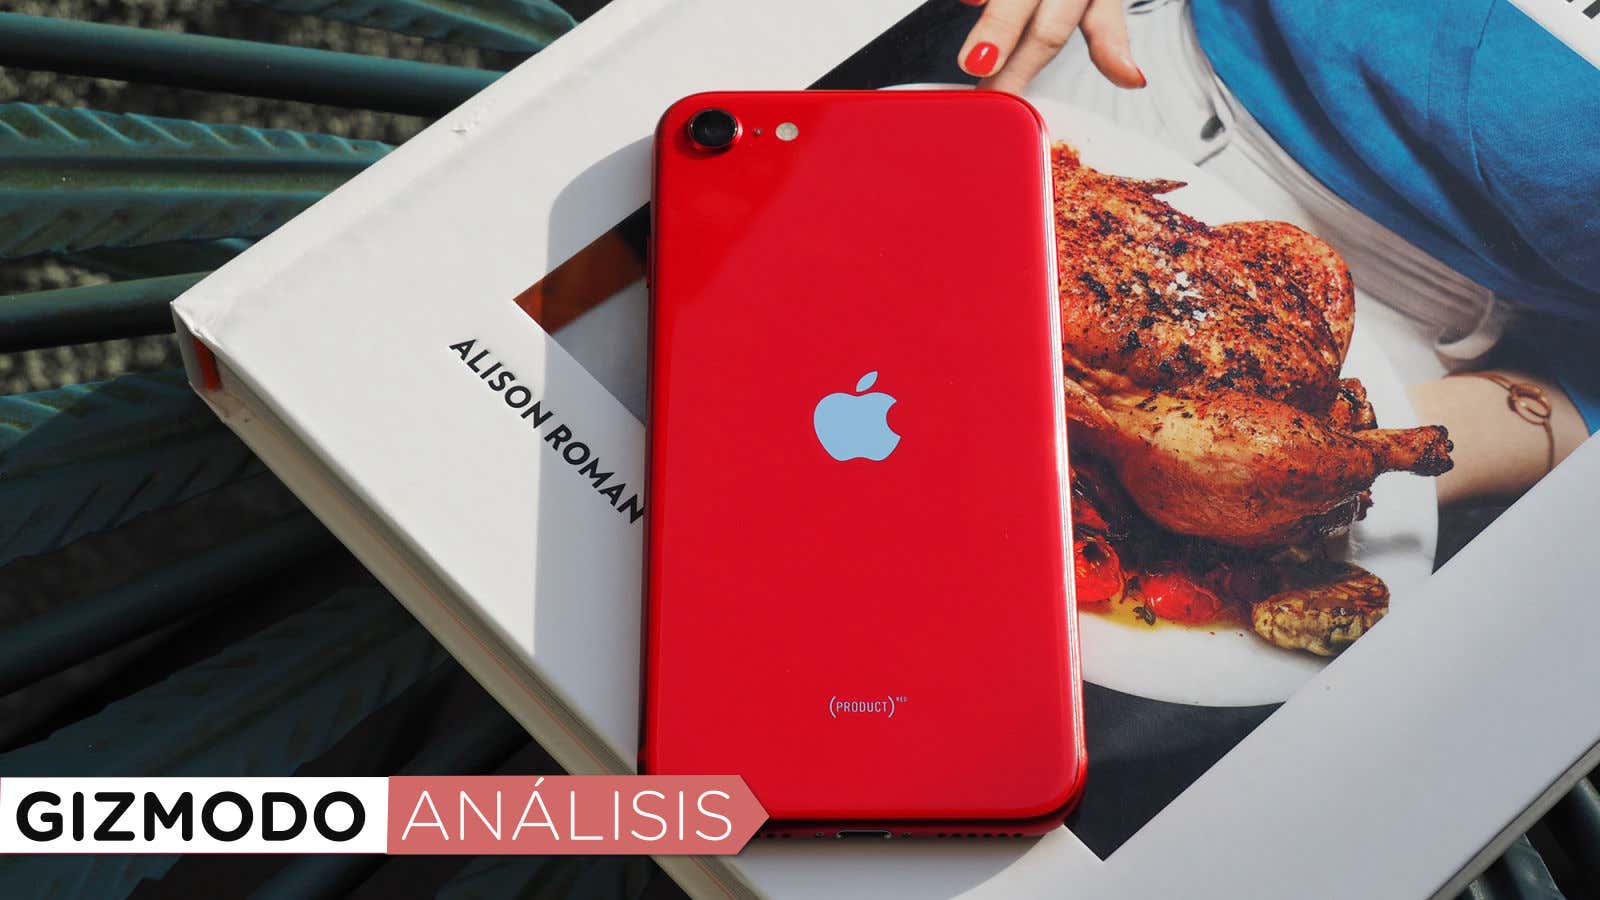 iPhone SE 2020, análisis y opinión del nuevo iPhone barato de Apple